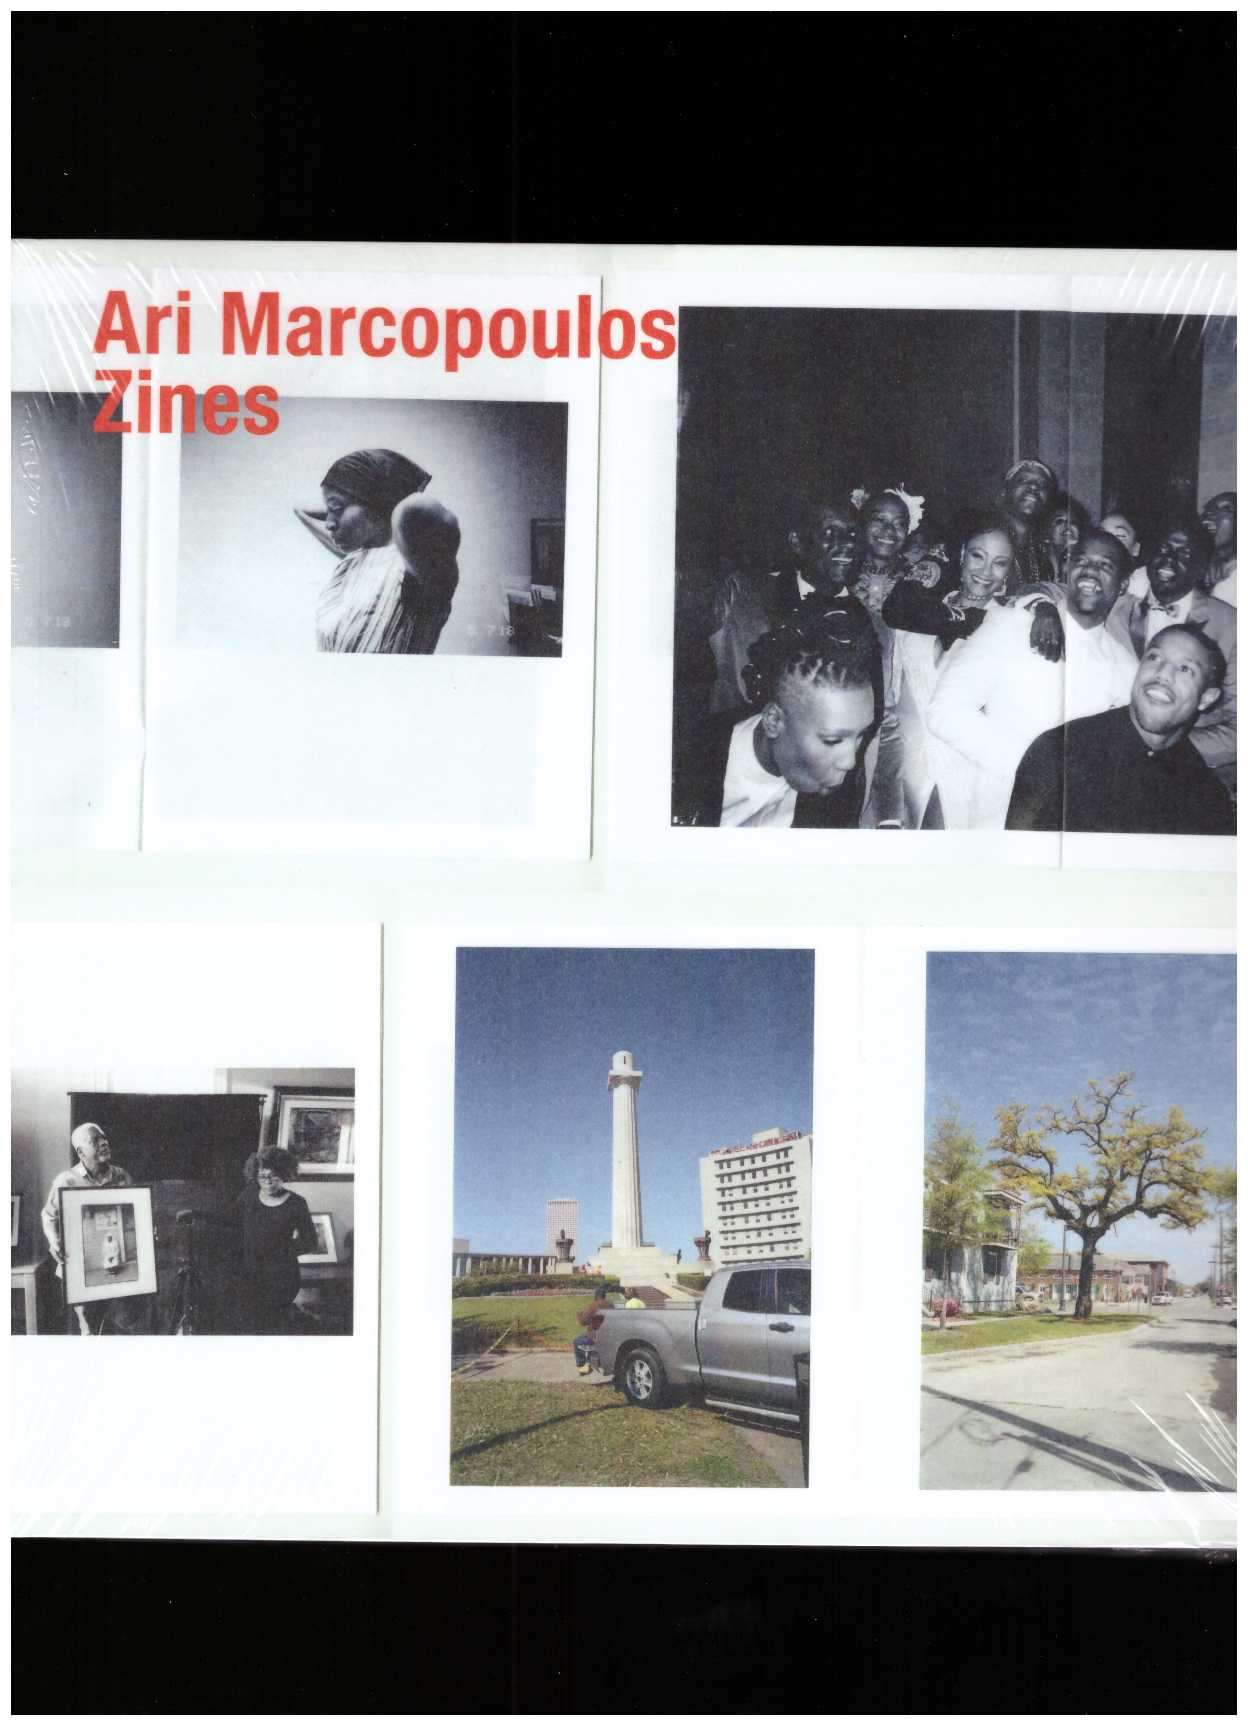 MARCOPOULOS, Ari - Ari Marcopoulos: Zines